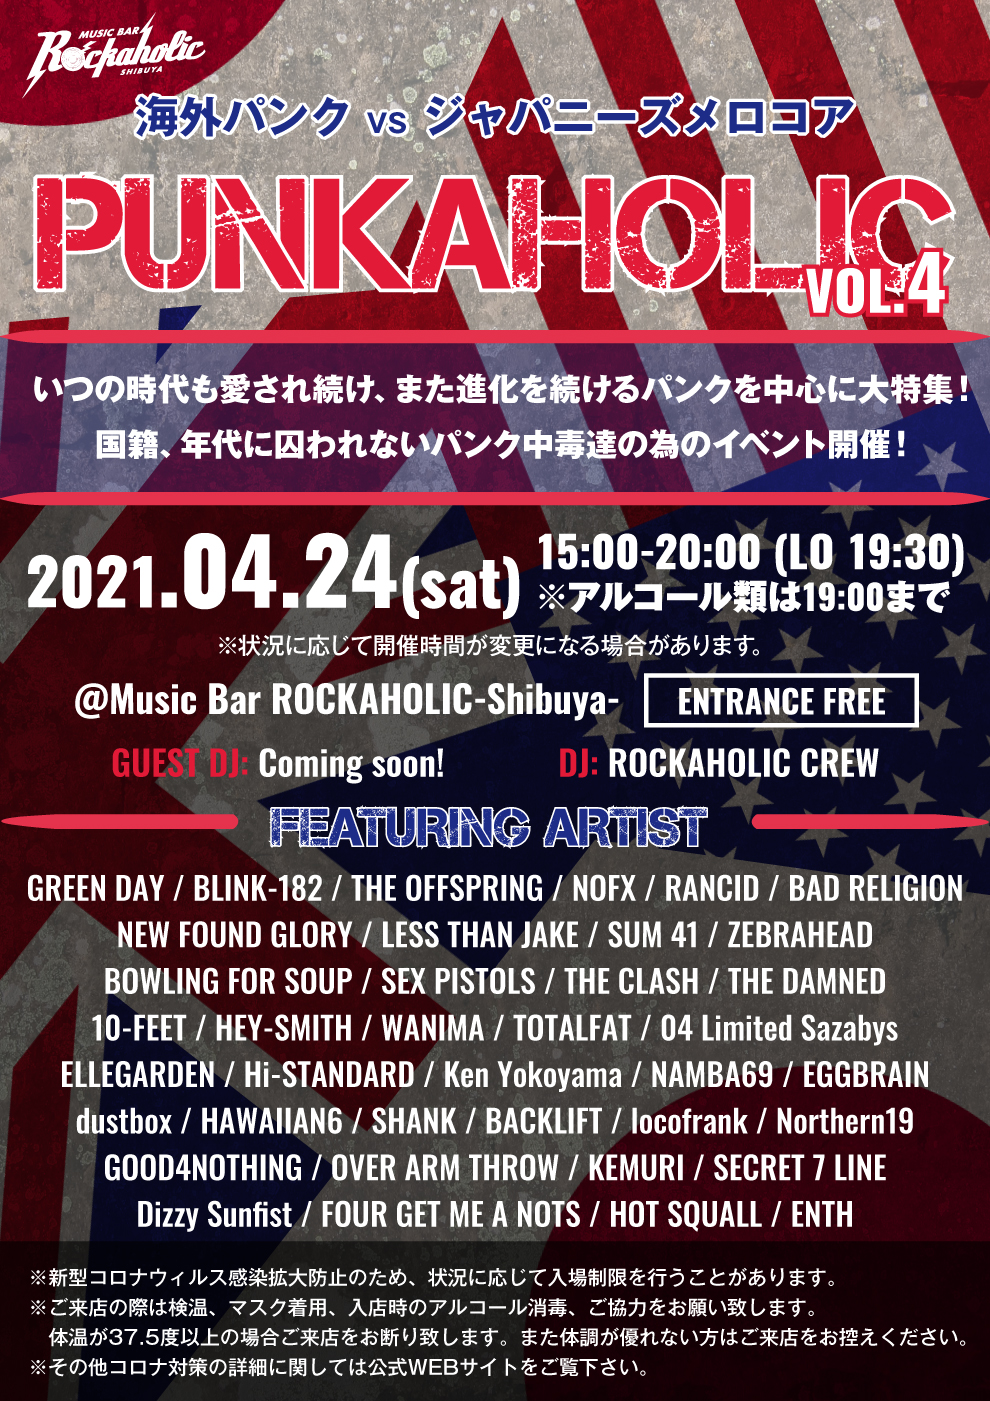 https://bar-rockaholic.jp/shibuya/blog/IMG_5011.JPG